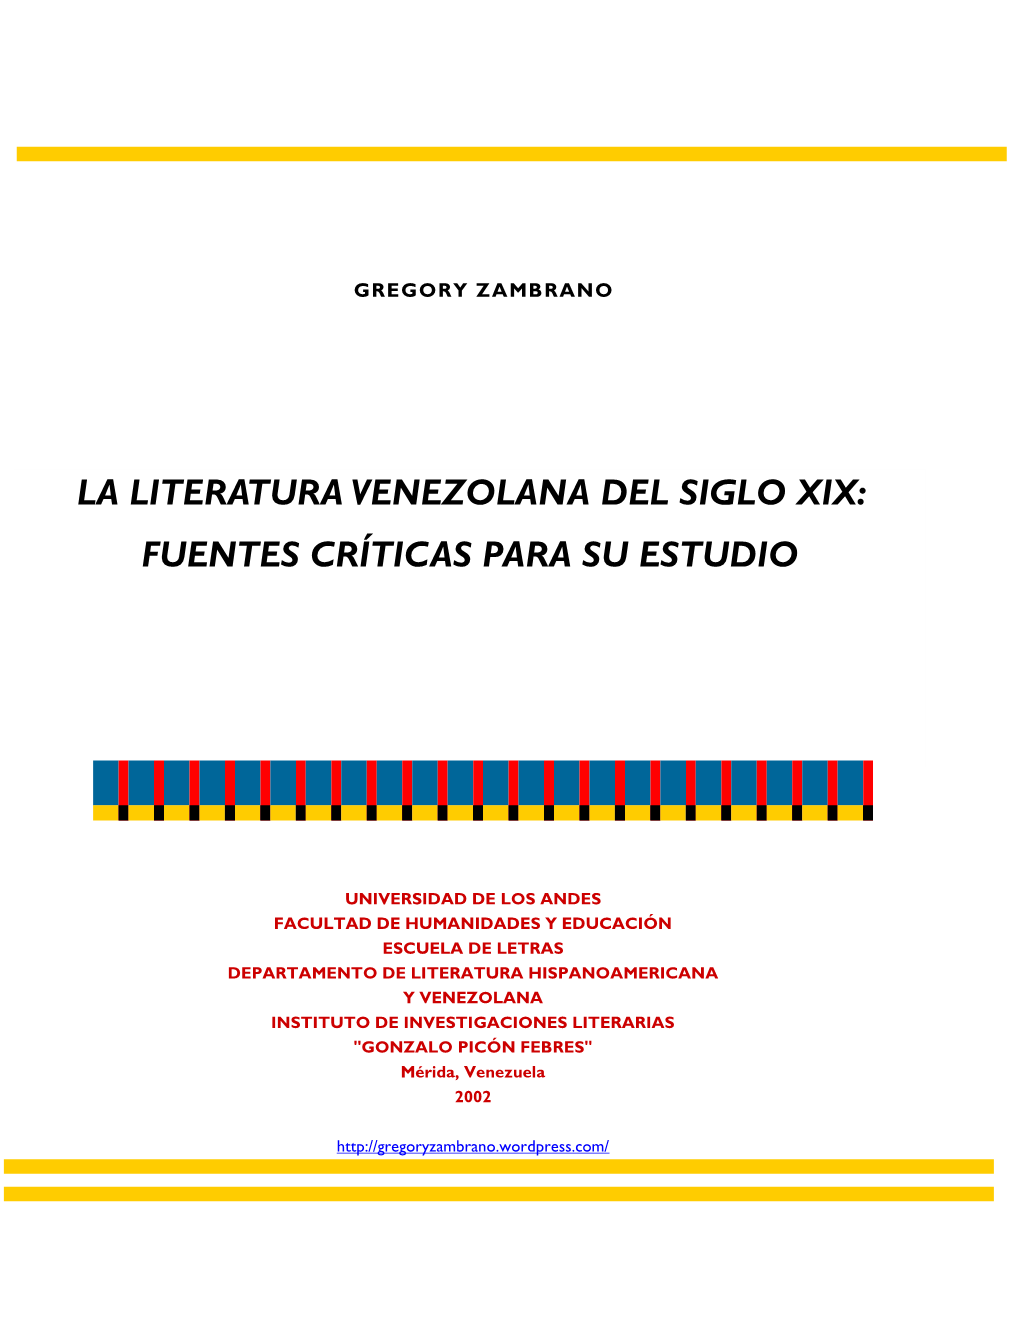 La Literatura Venezolana Del Siglo Xix: Fuentes Críticas Para Su Estudio